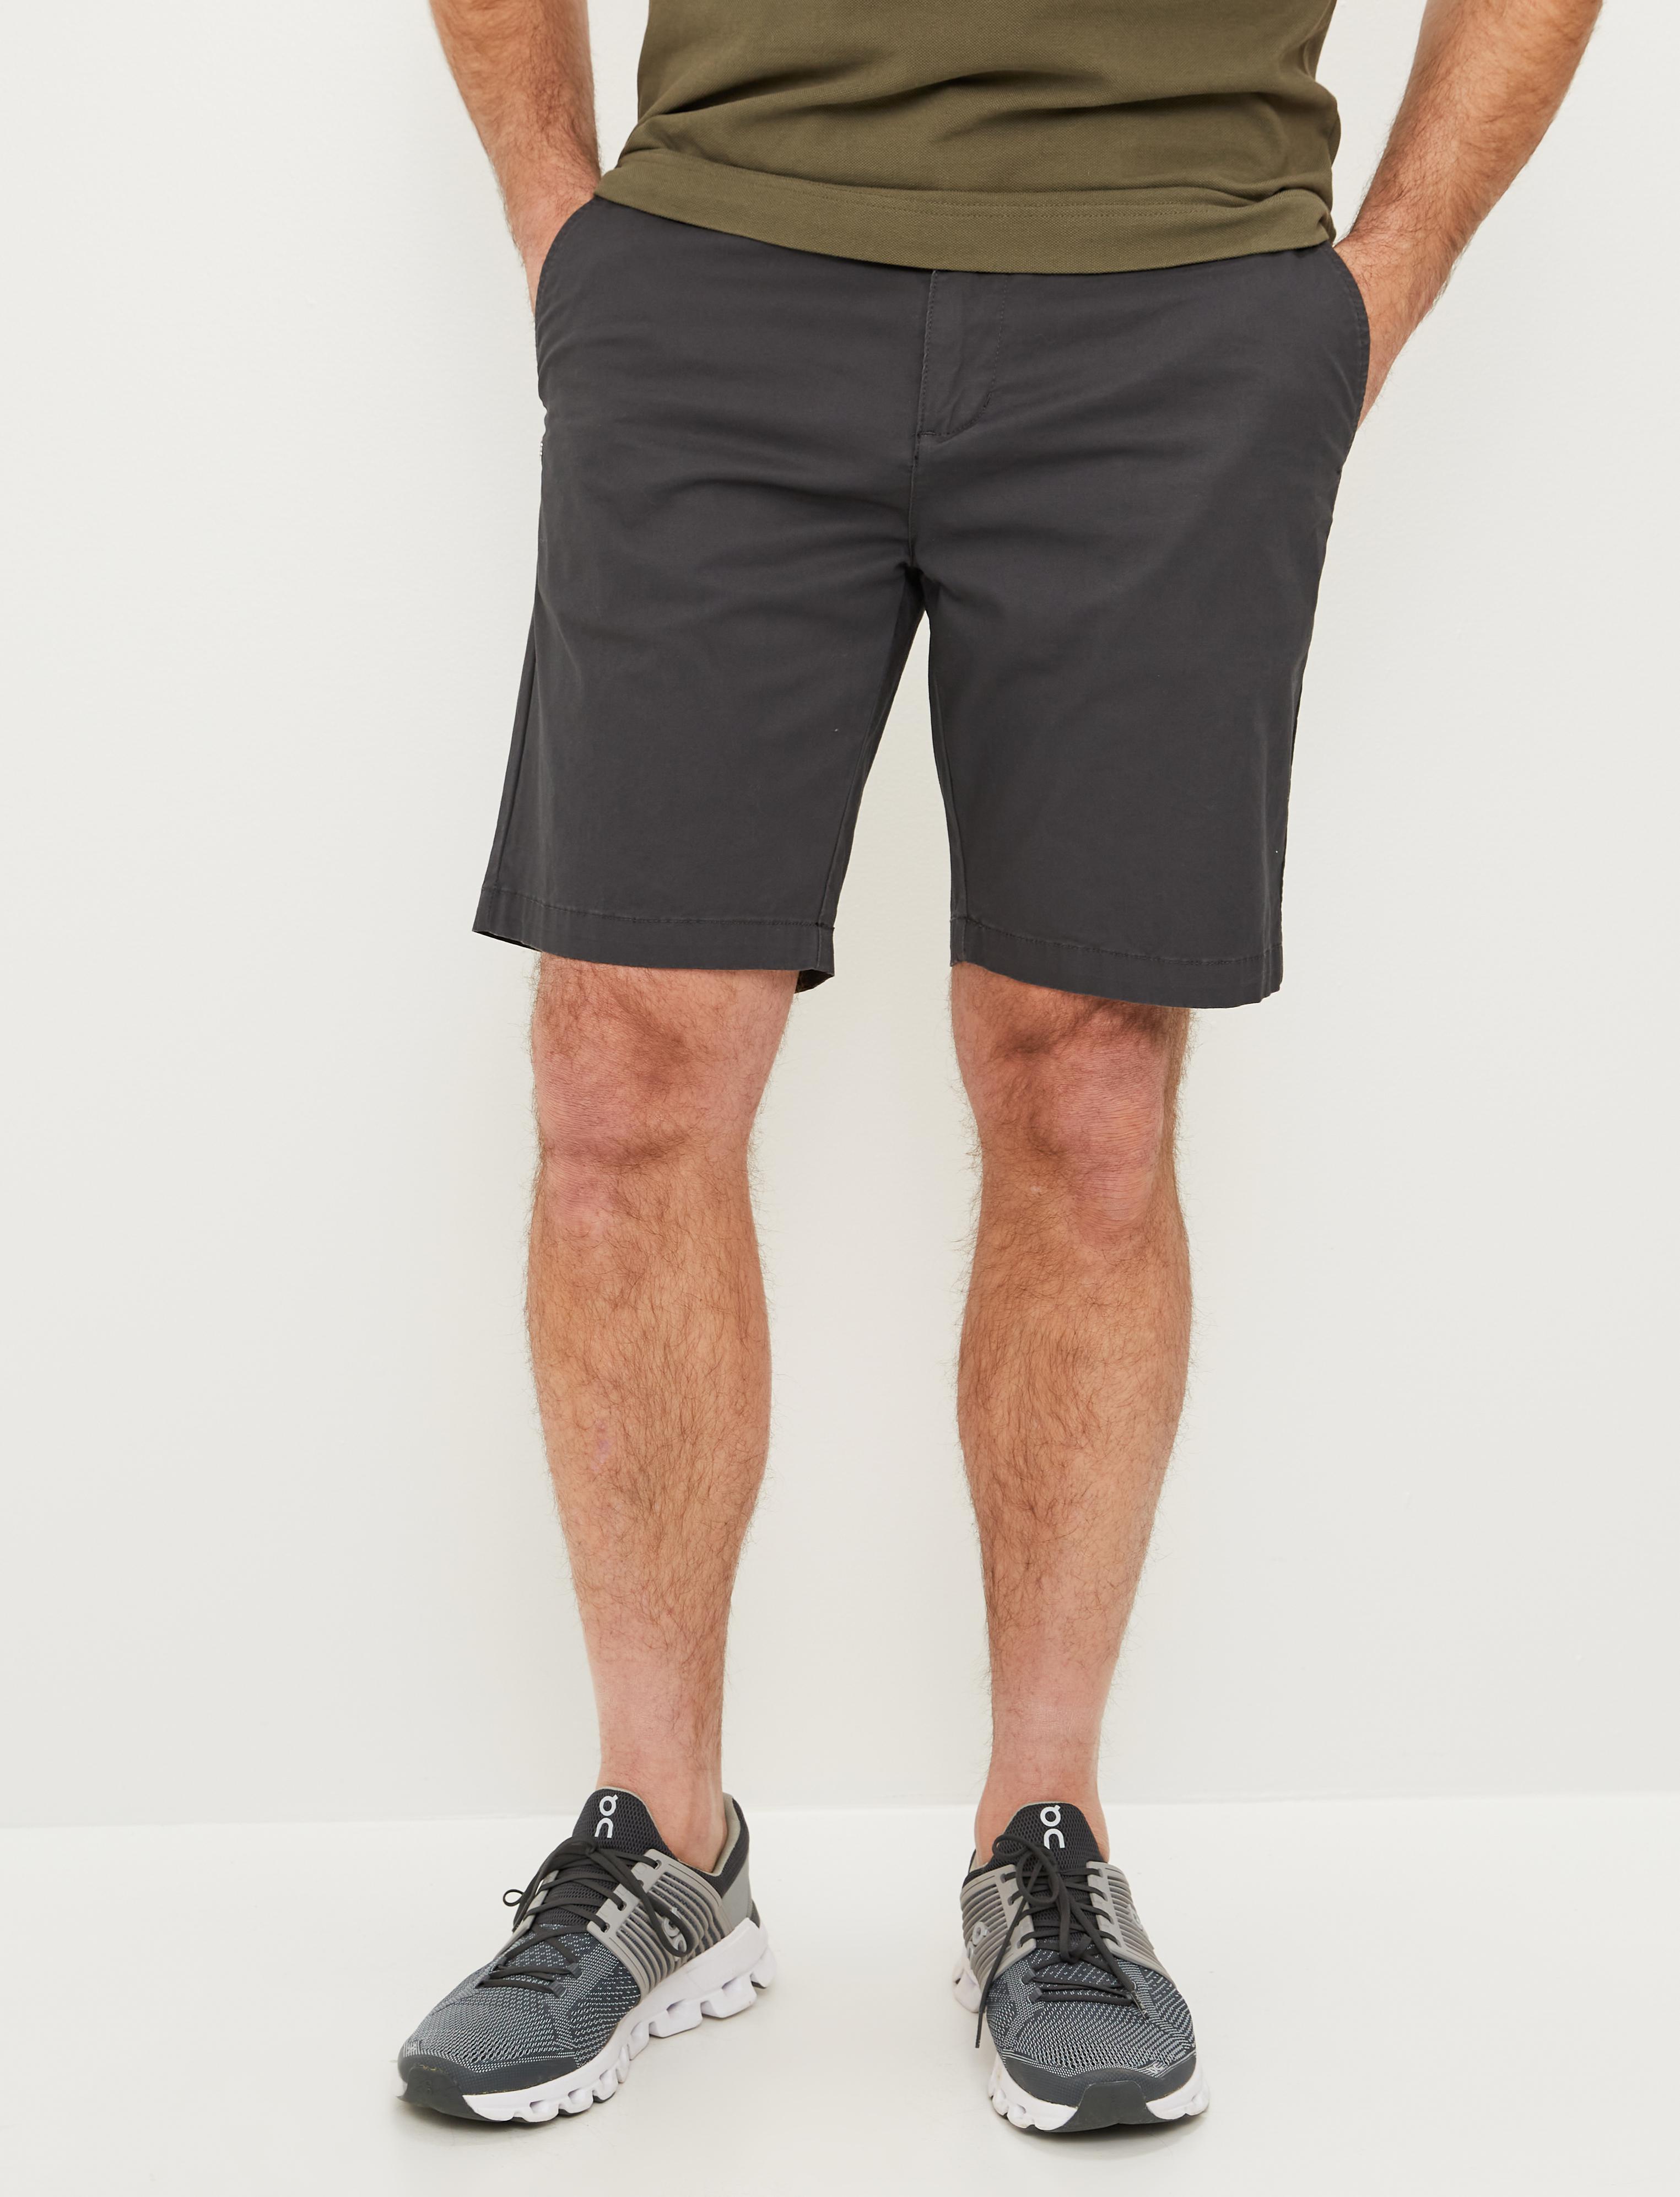 Lugano Shorts Charcoal - Grey shorts men